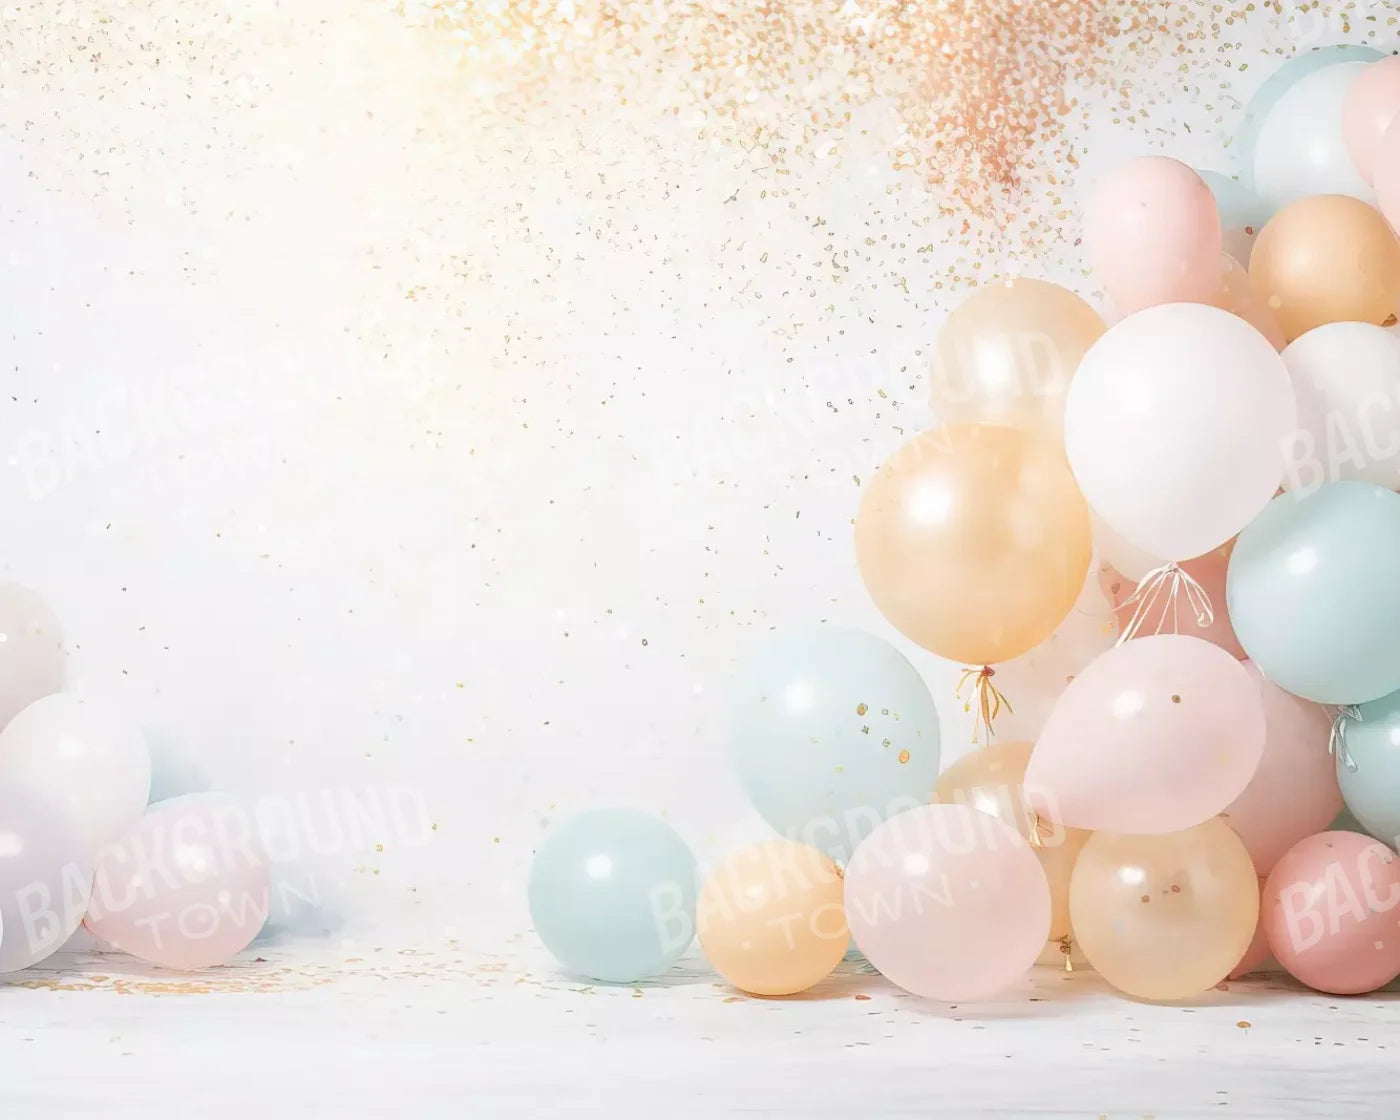 Fancy Party Balloons Ii 10’X8’ Fleece (120 X 96 Inch) Backdrop